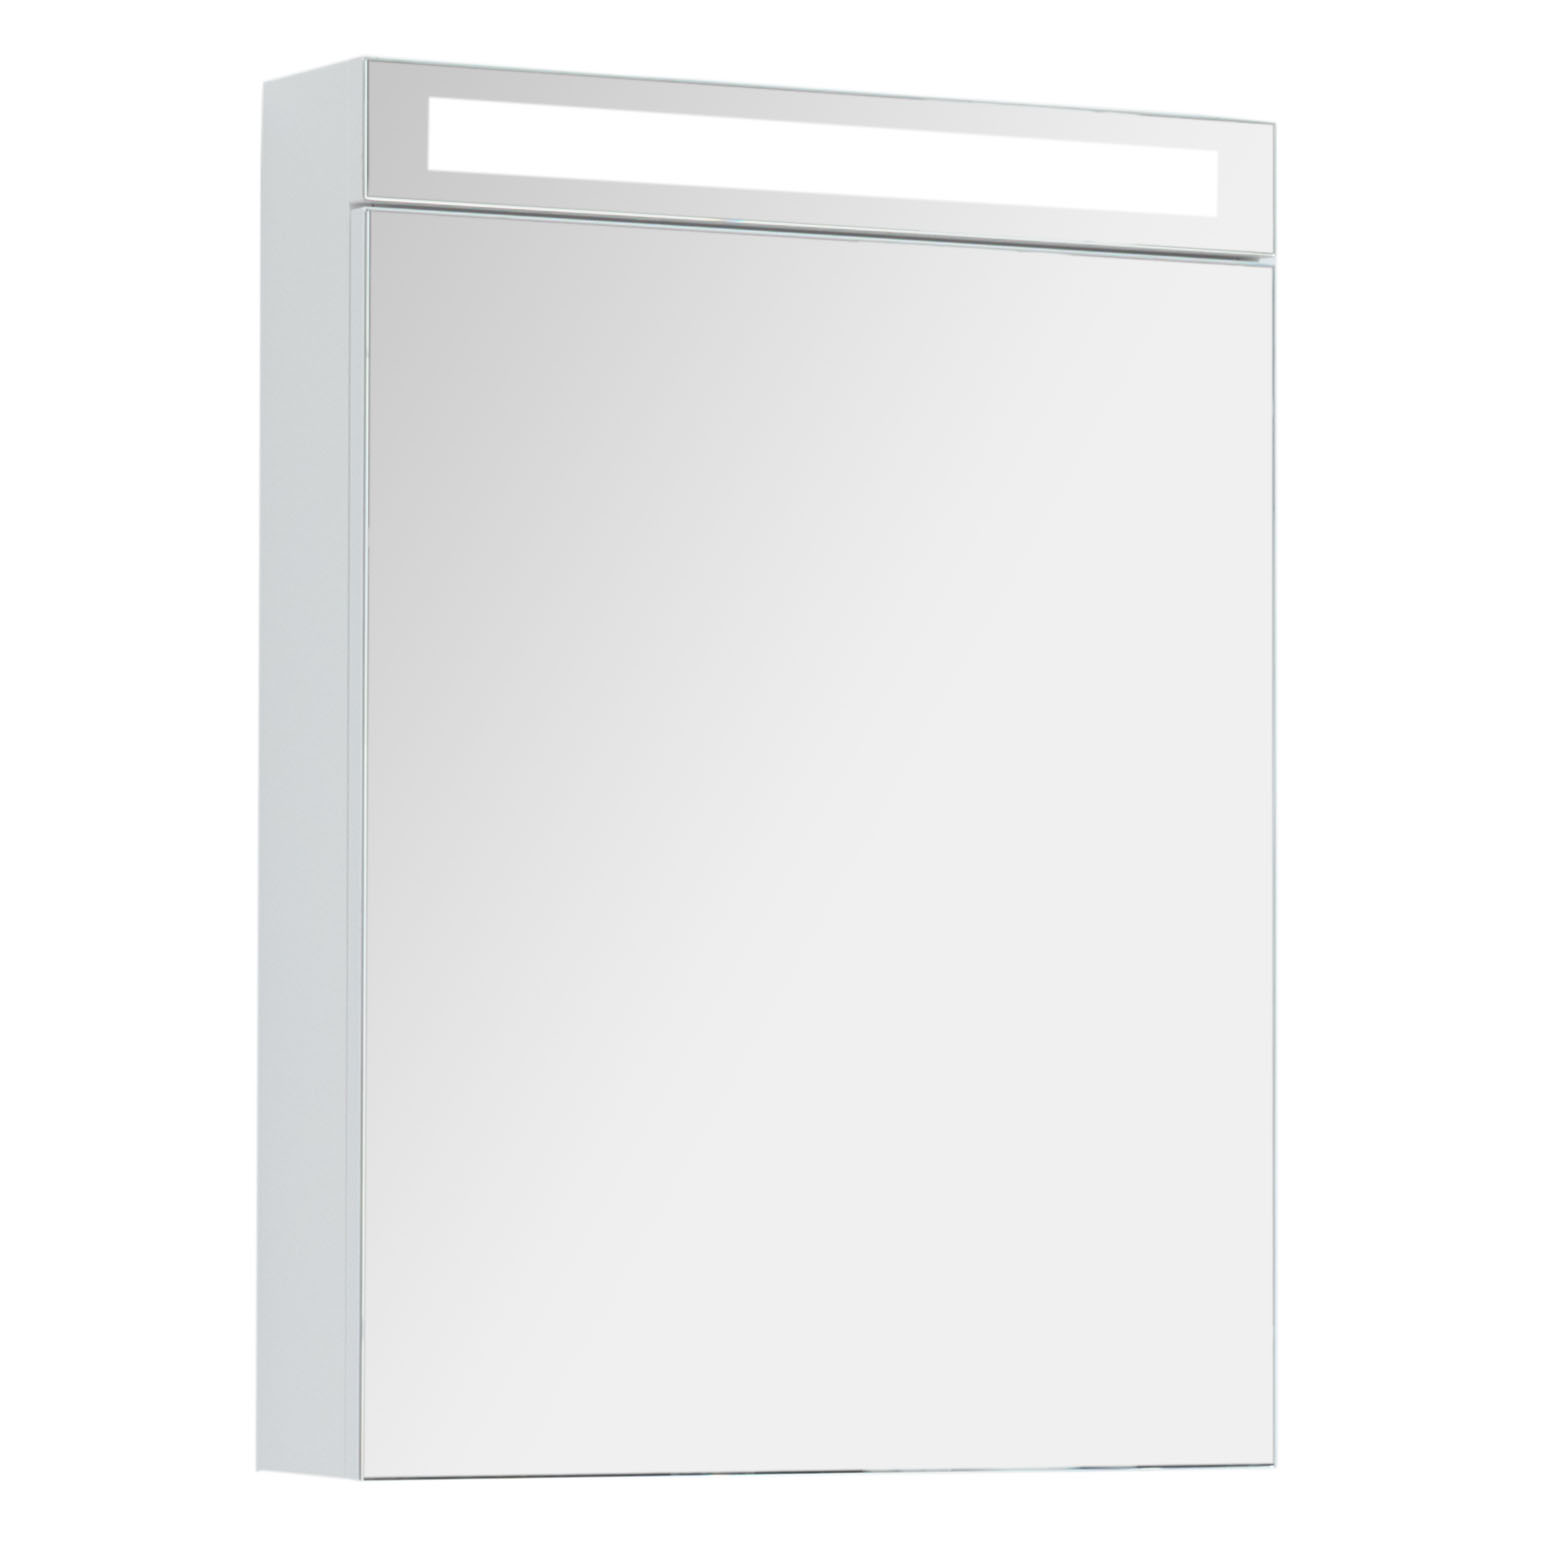 Зеркальный шкаф для ванной Dreja Max 60 белый глянец зеркальный шкаф emmy вэла 40х60 правый белый wel40bel r